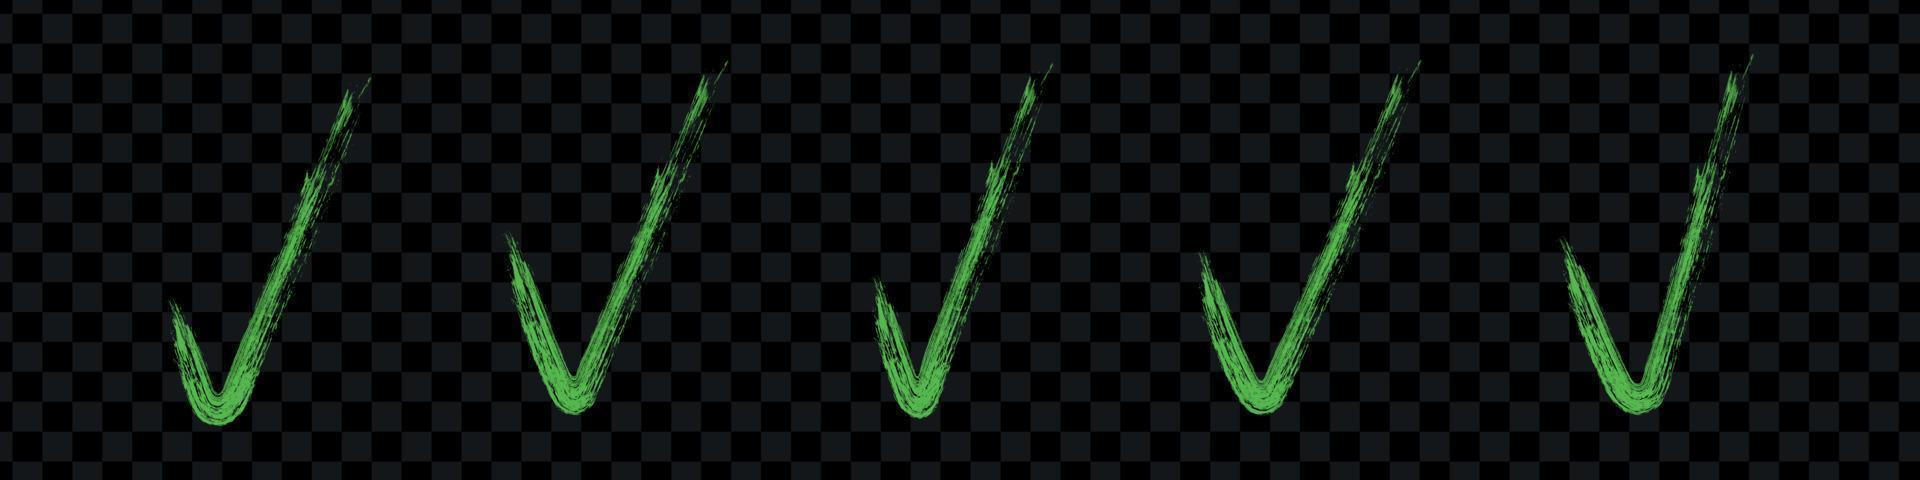 conjunto de marca de verificación verde. marque el icono de pincel grunge. ok, sí o signo correcto. ilustraciones vectoriales gráficas planas aisladas vector